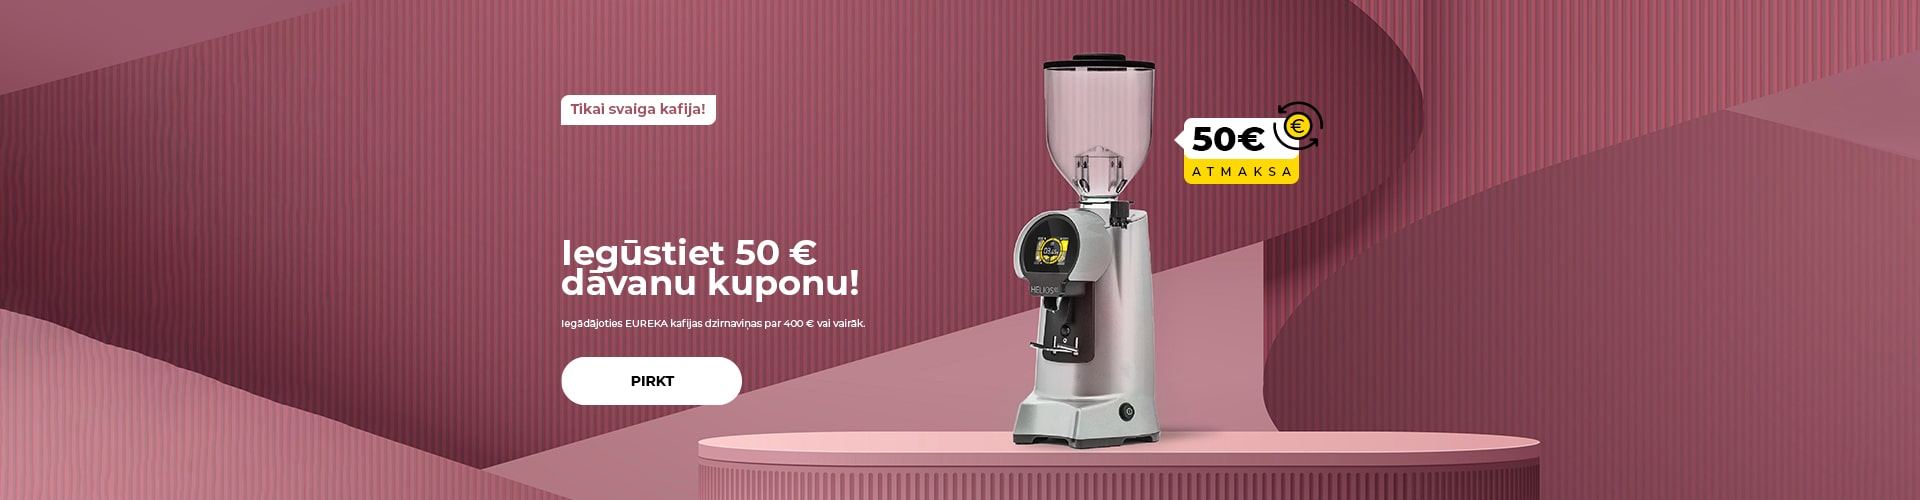 "Iegūstiet 50 € dāvanu kuponu! Iegādājoties EUREKA kafijas dzirnaviņas par 400 € vai vairāk."